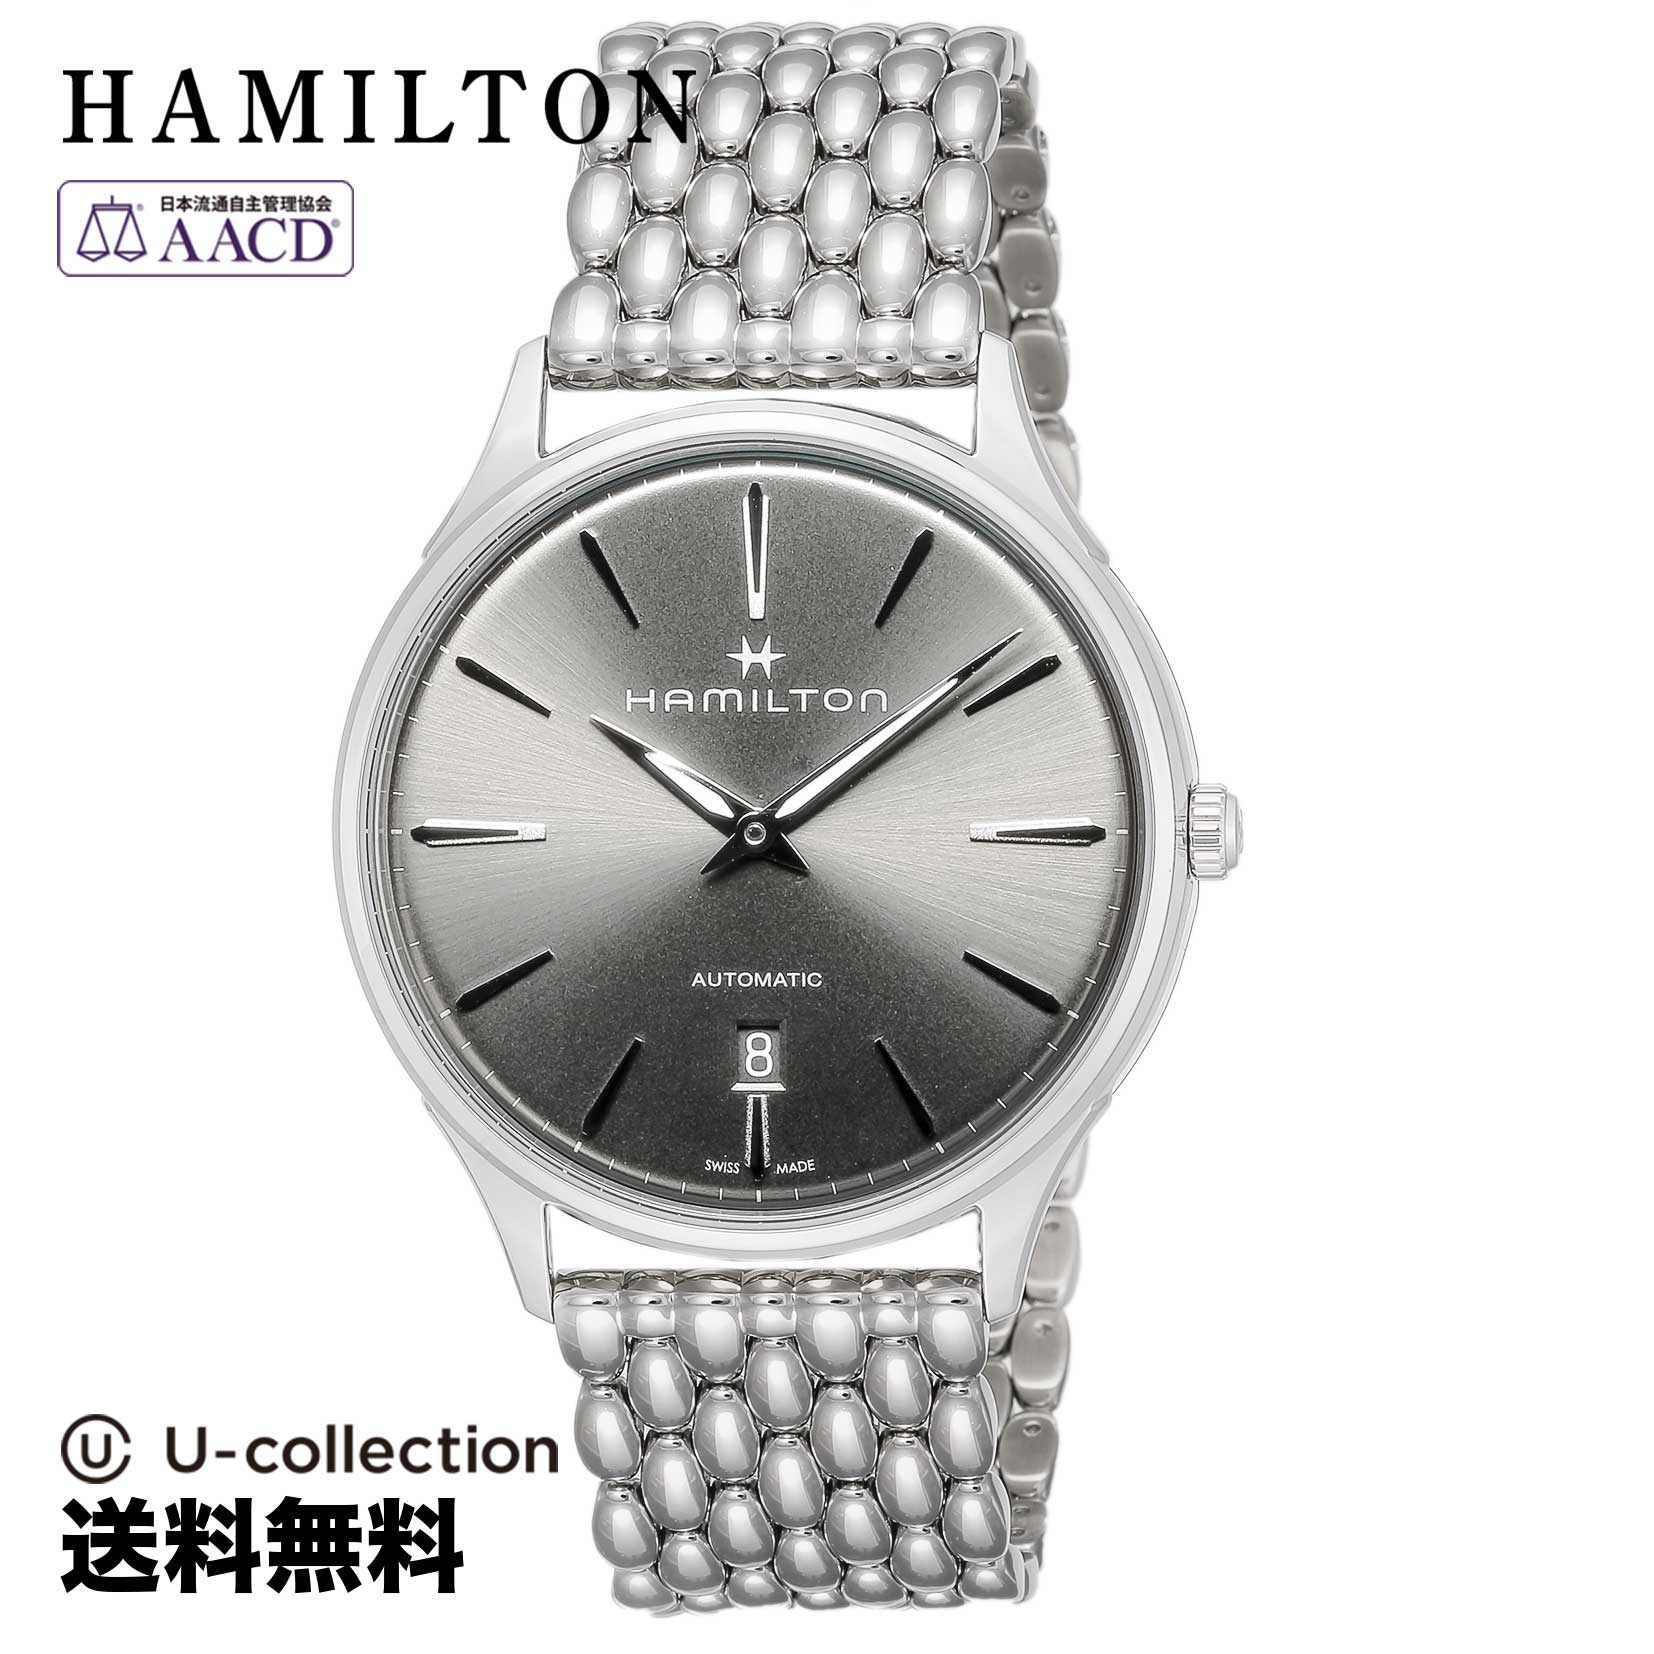 ハミルトン【腕時計】 HAMILTON(ハミルトン) Jazzmaster / ジャズマスター メンズ グレー 自動巻 H38525181 時計 ブランド